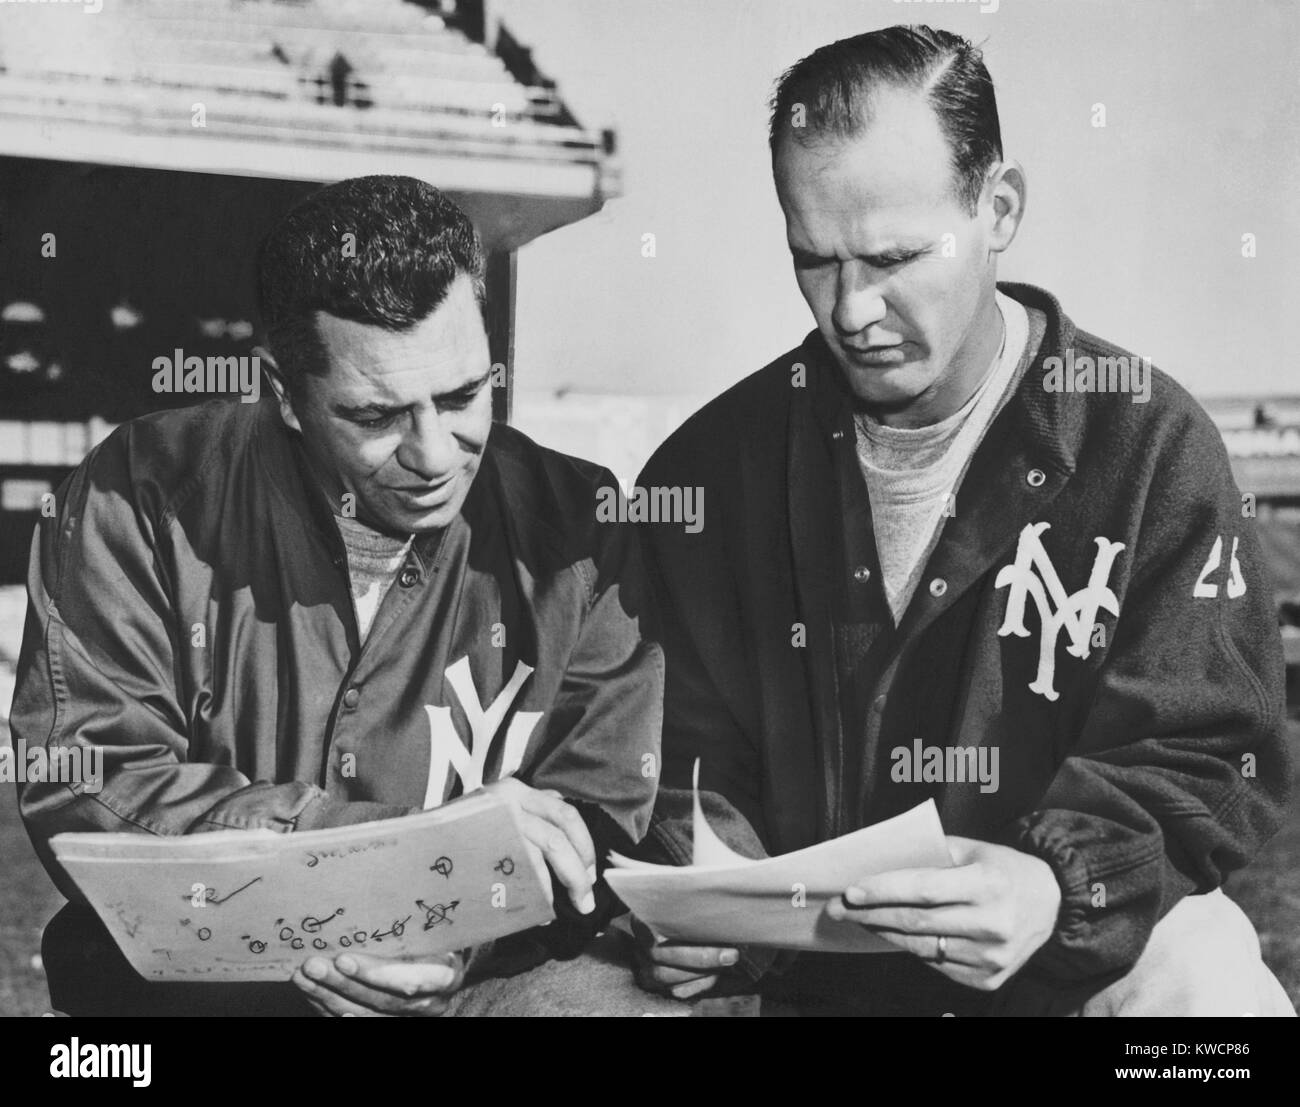 Tom Landry,Vince Lombardi,play charts,New York Giants,football,coaches,NY,1958 